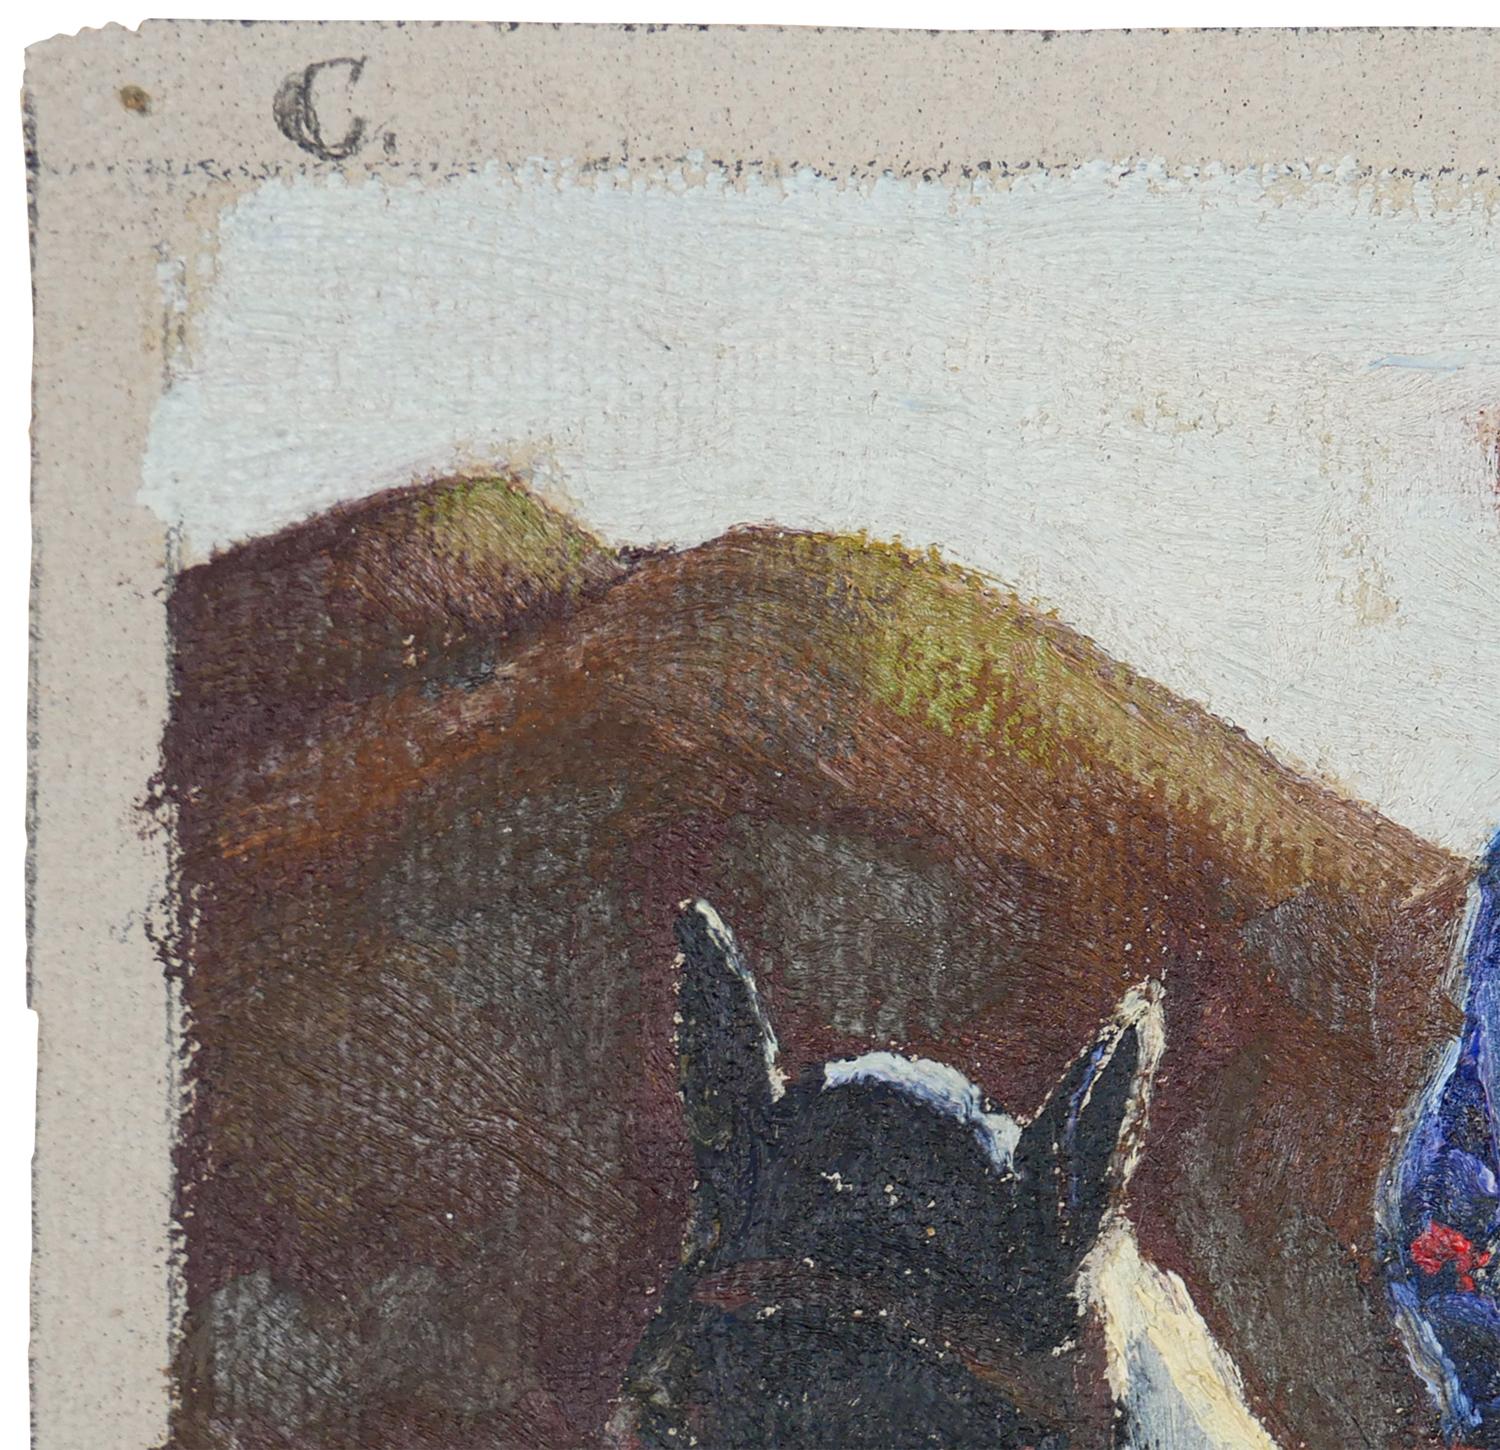 Abstrakt-impressionistisches Gemälde eines Cowboys auf einem Pferd in Blau, Rot und Braun (Abstrakter Impressionismus), Painting, von Fred Darge